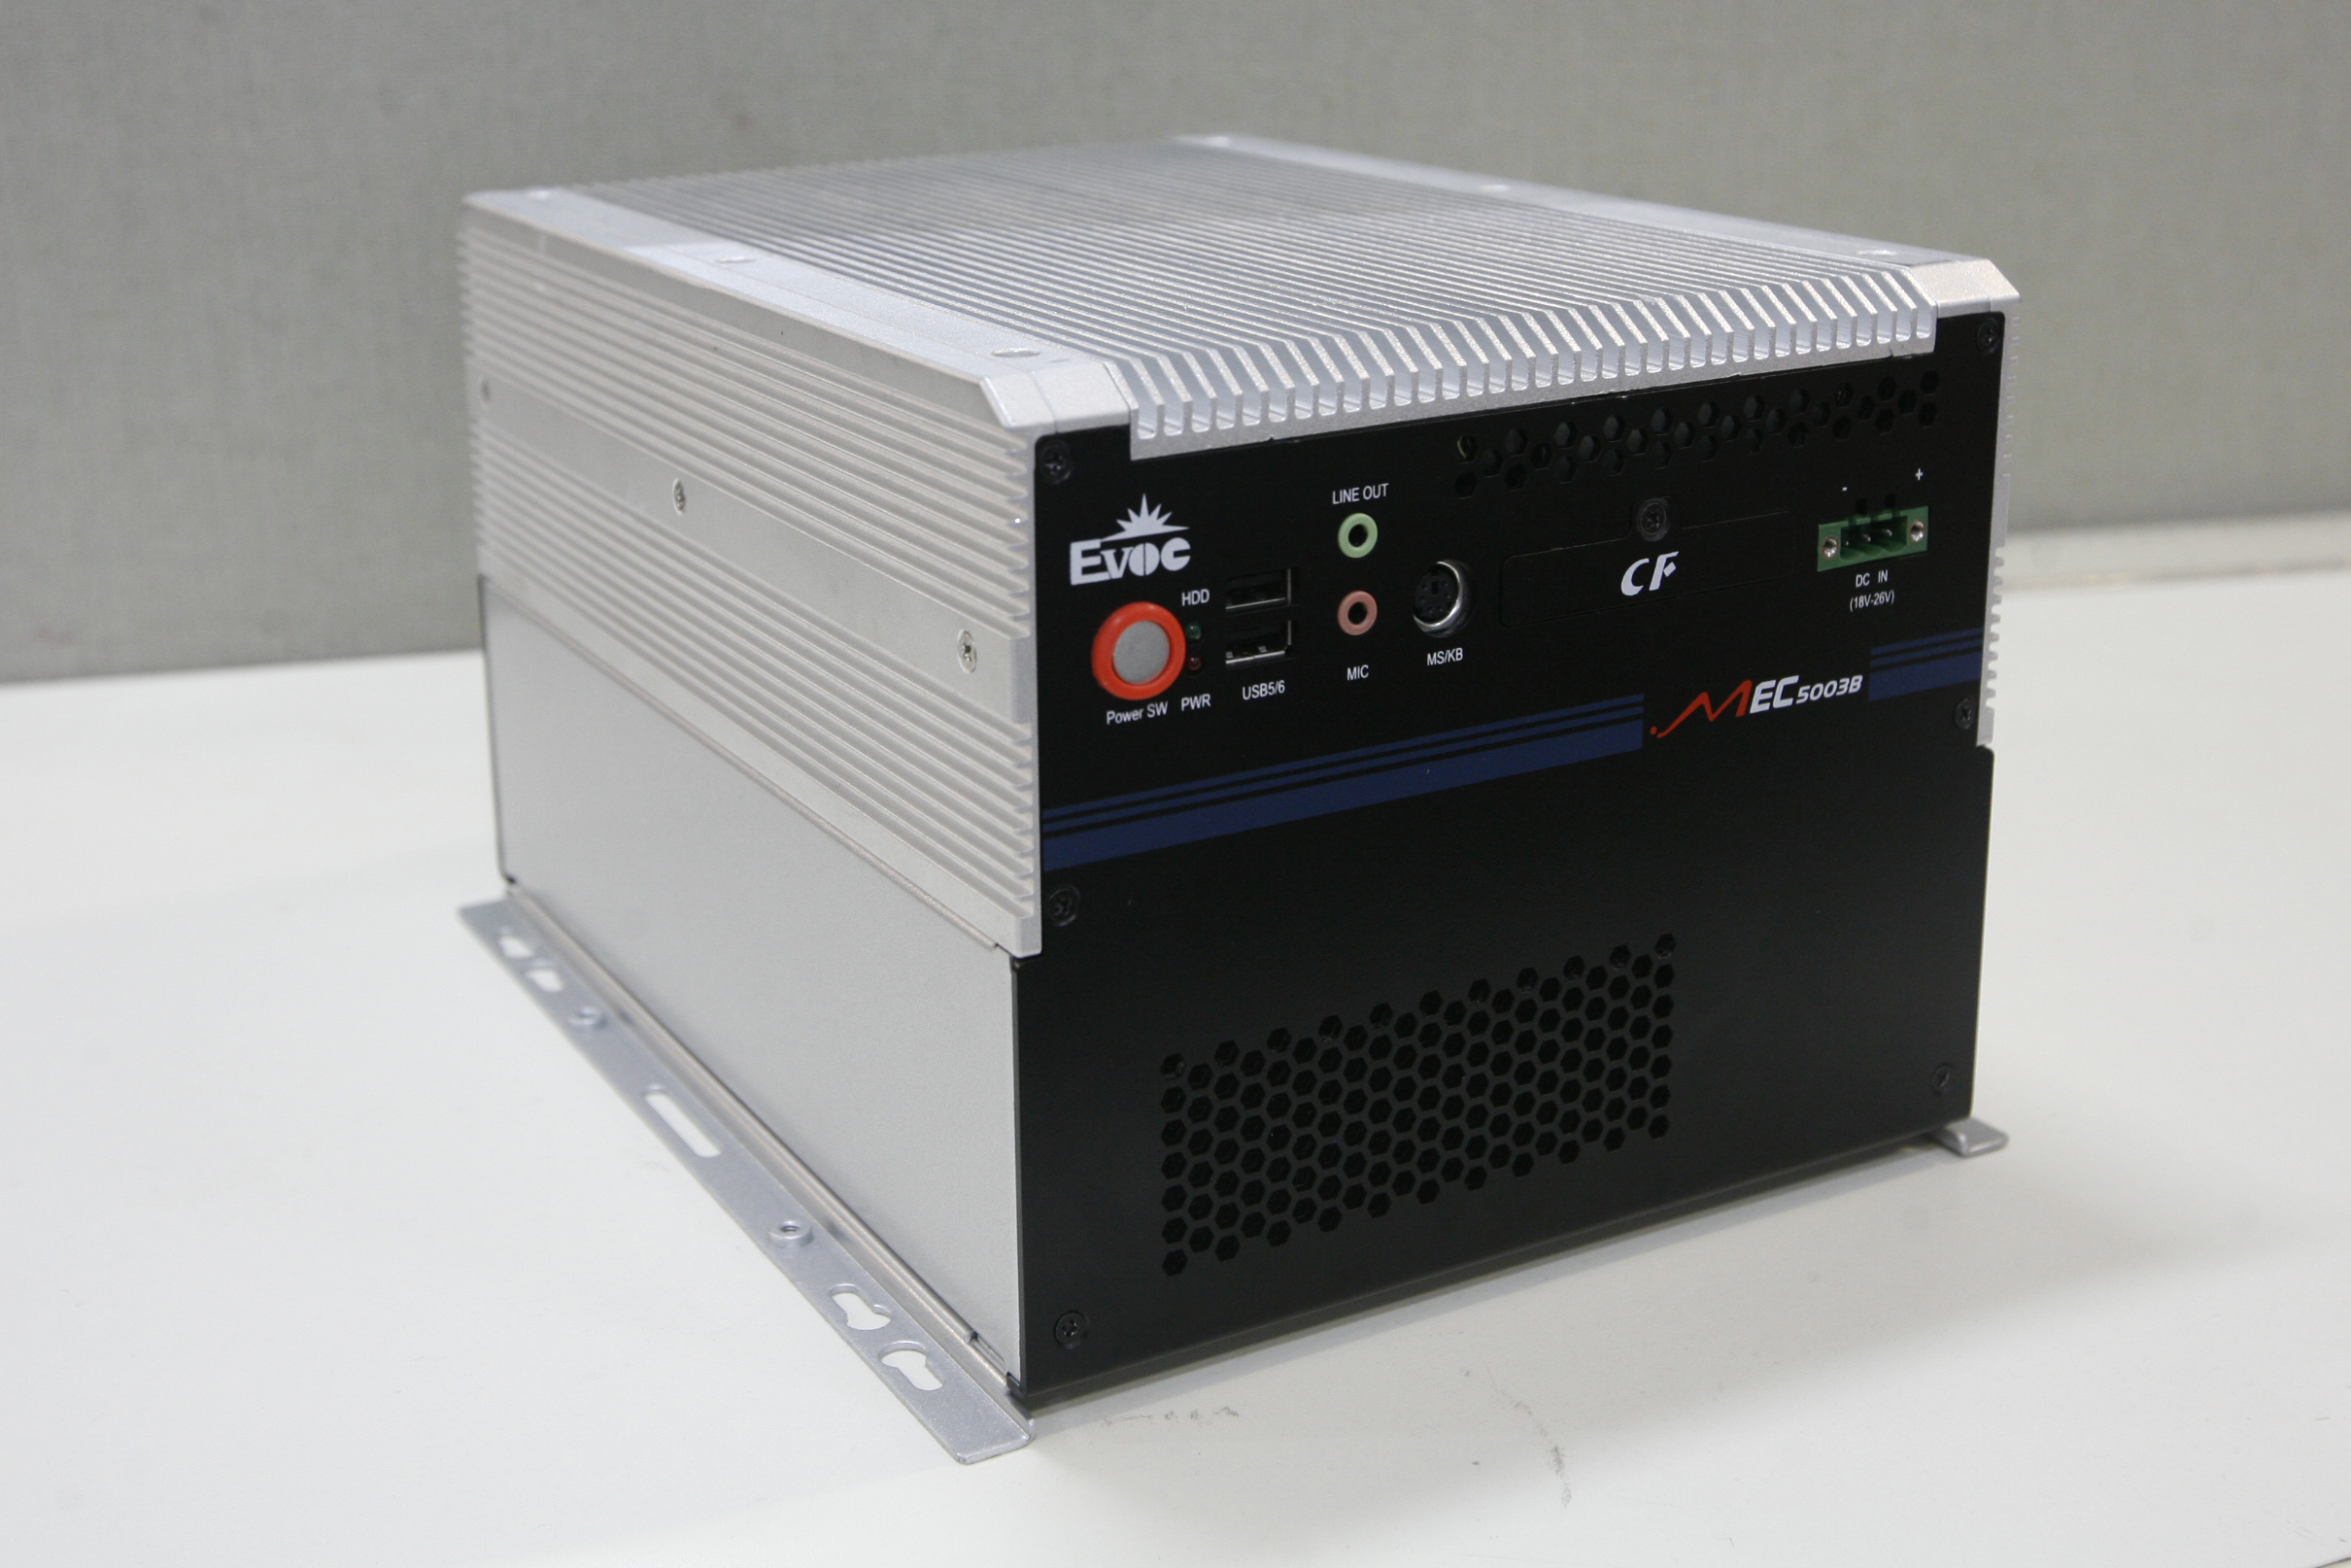 【研祥直营】MEC-5003B低功耗无风扇高性能嵌入式工控机 MEC-5003B,研祥,工控机